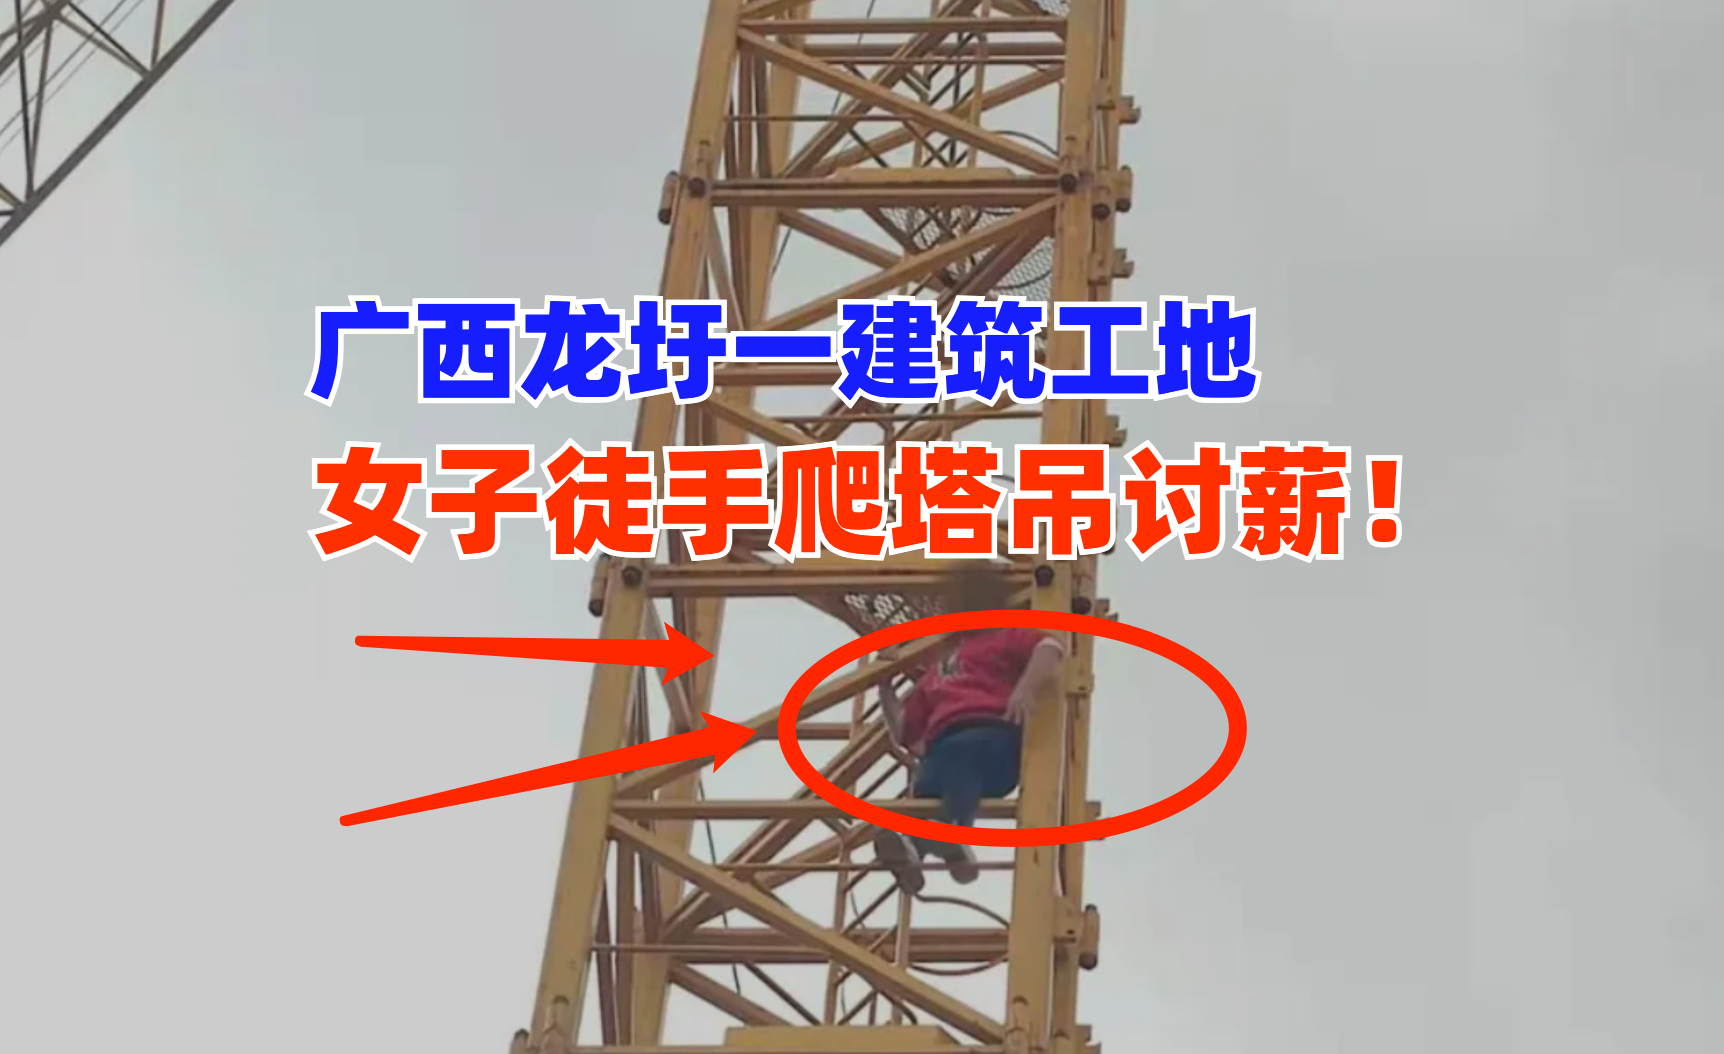 得不偿失！广西龙圩某工地，一女子徒手爬塔吊讨薪遭拘留